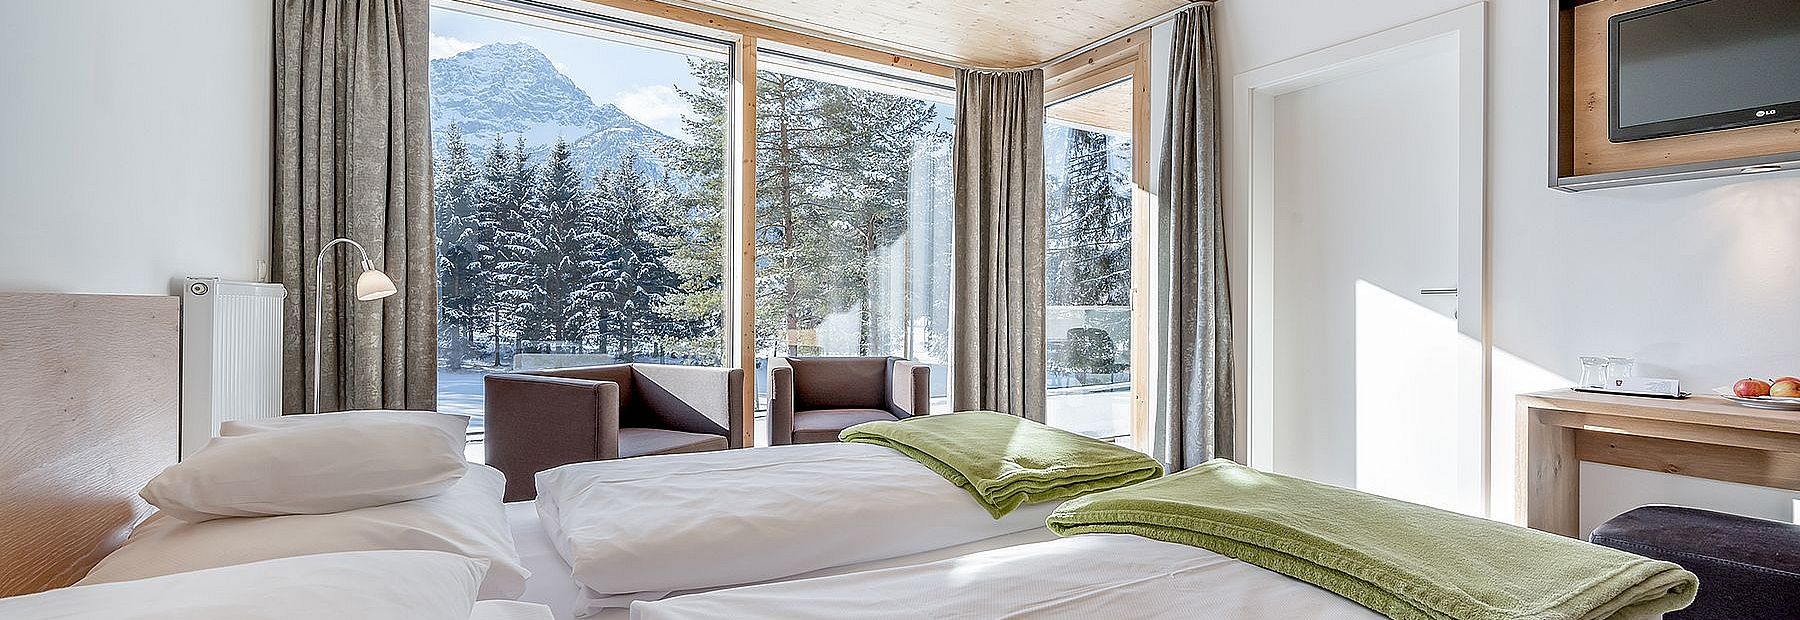 Hotelzimmer mit Doppelbett und Ausblick auf einen verschneiten Wald und die Berge im Winter